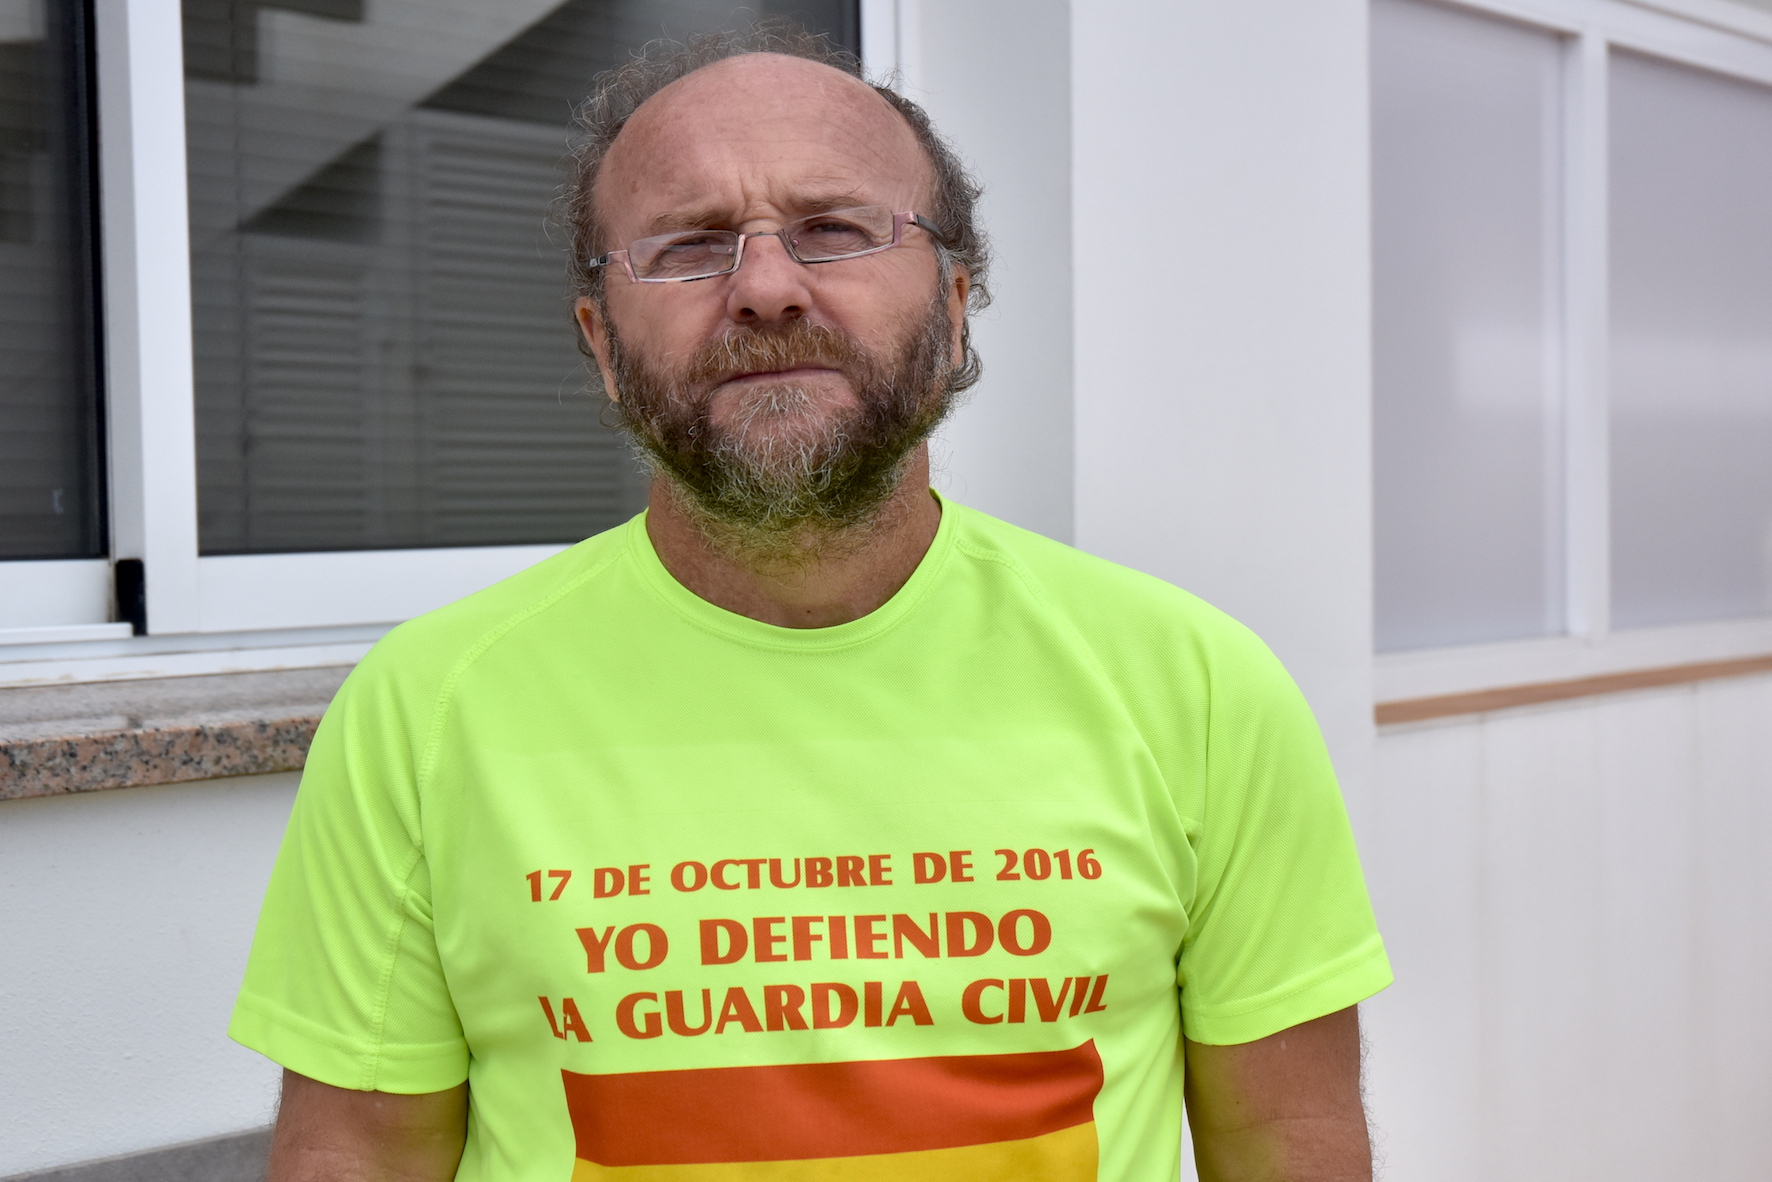 Los pescadores herreño piden la intervención de Pedro Sánchez ante la injusticia en el reparto de cuota del atún rojo